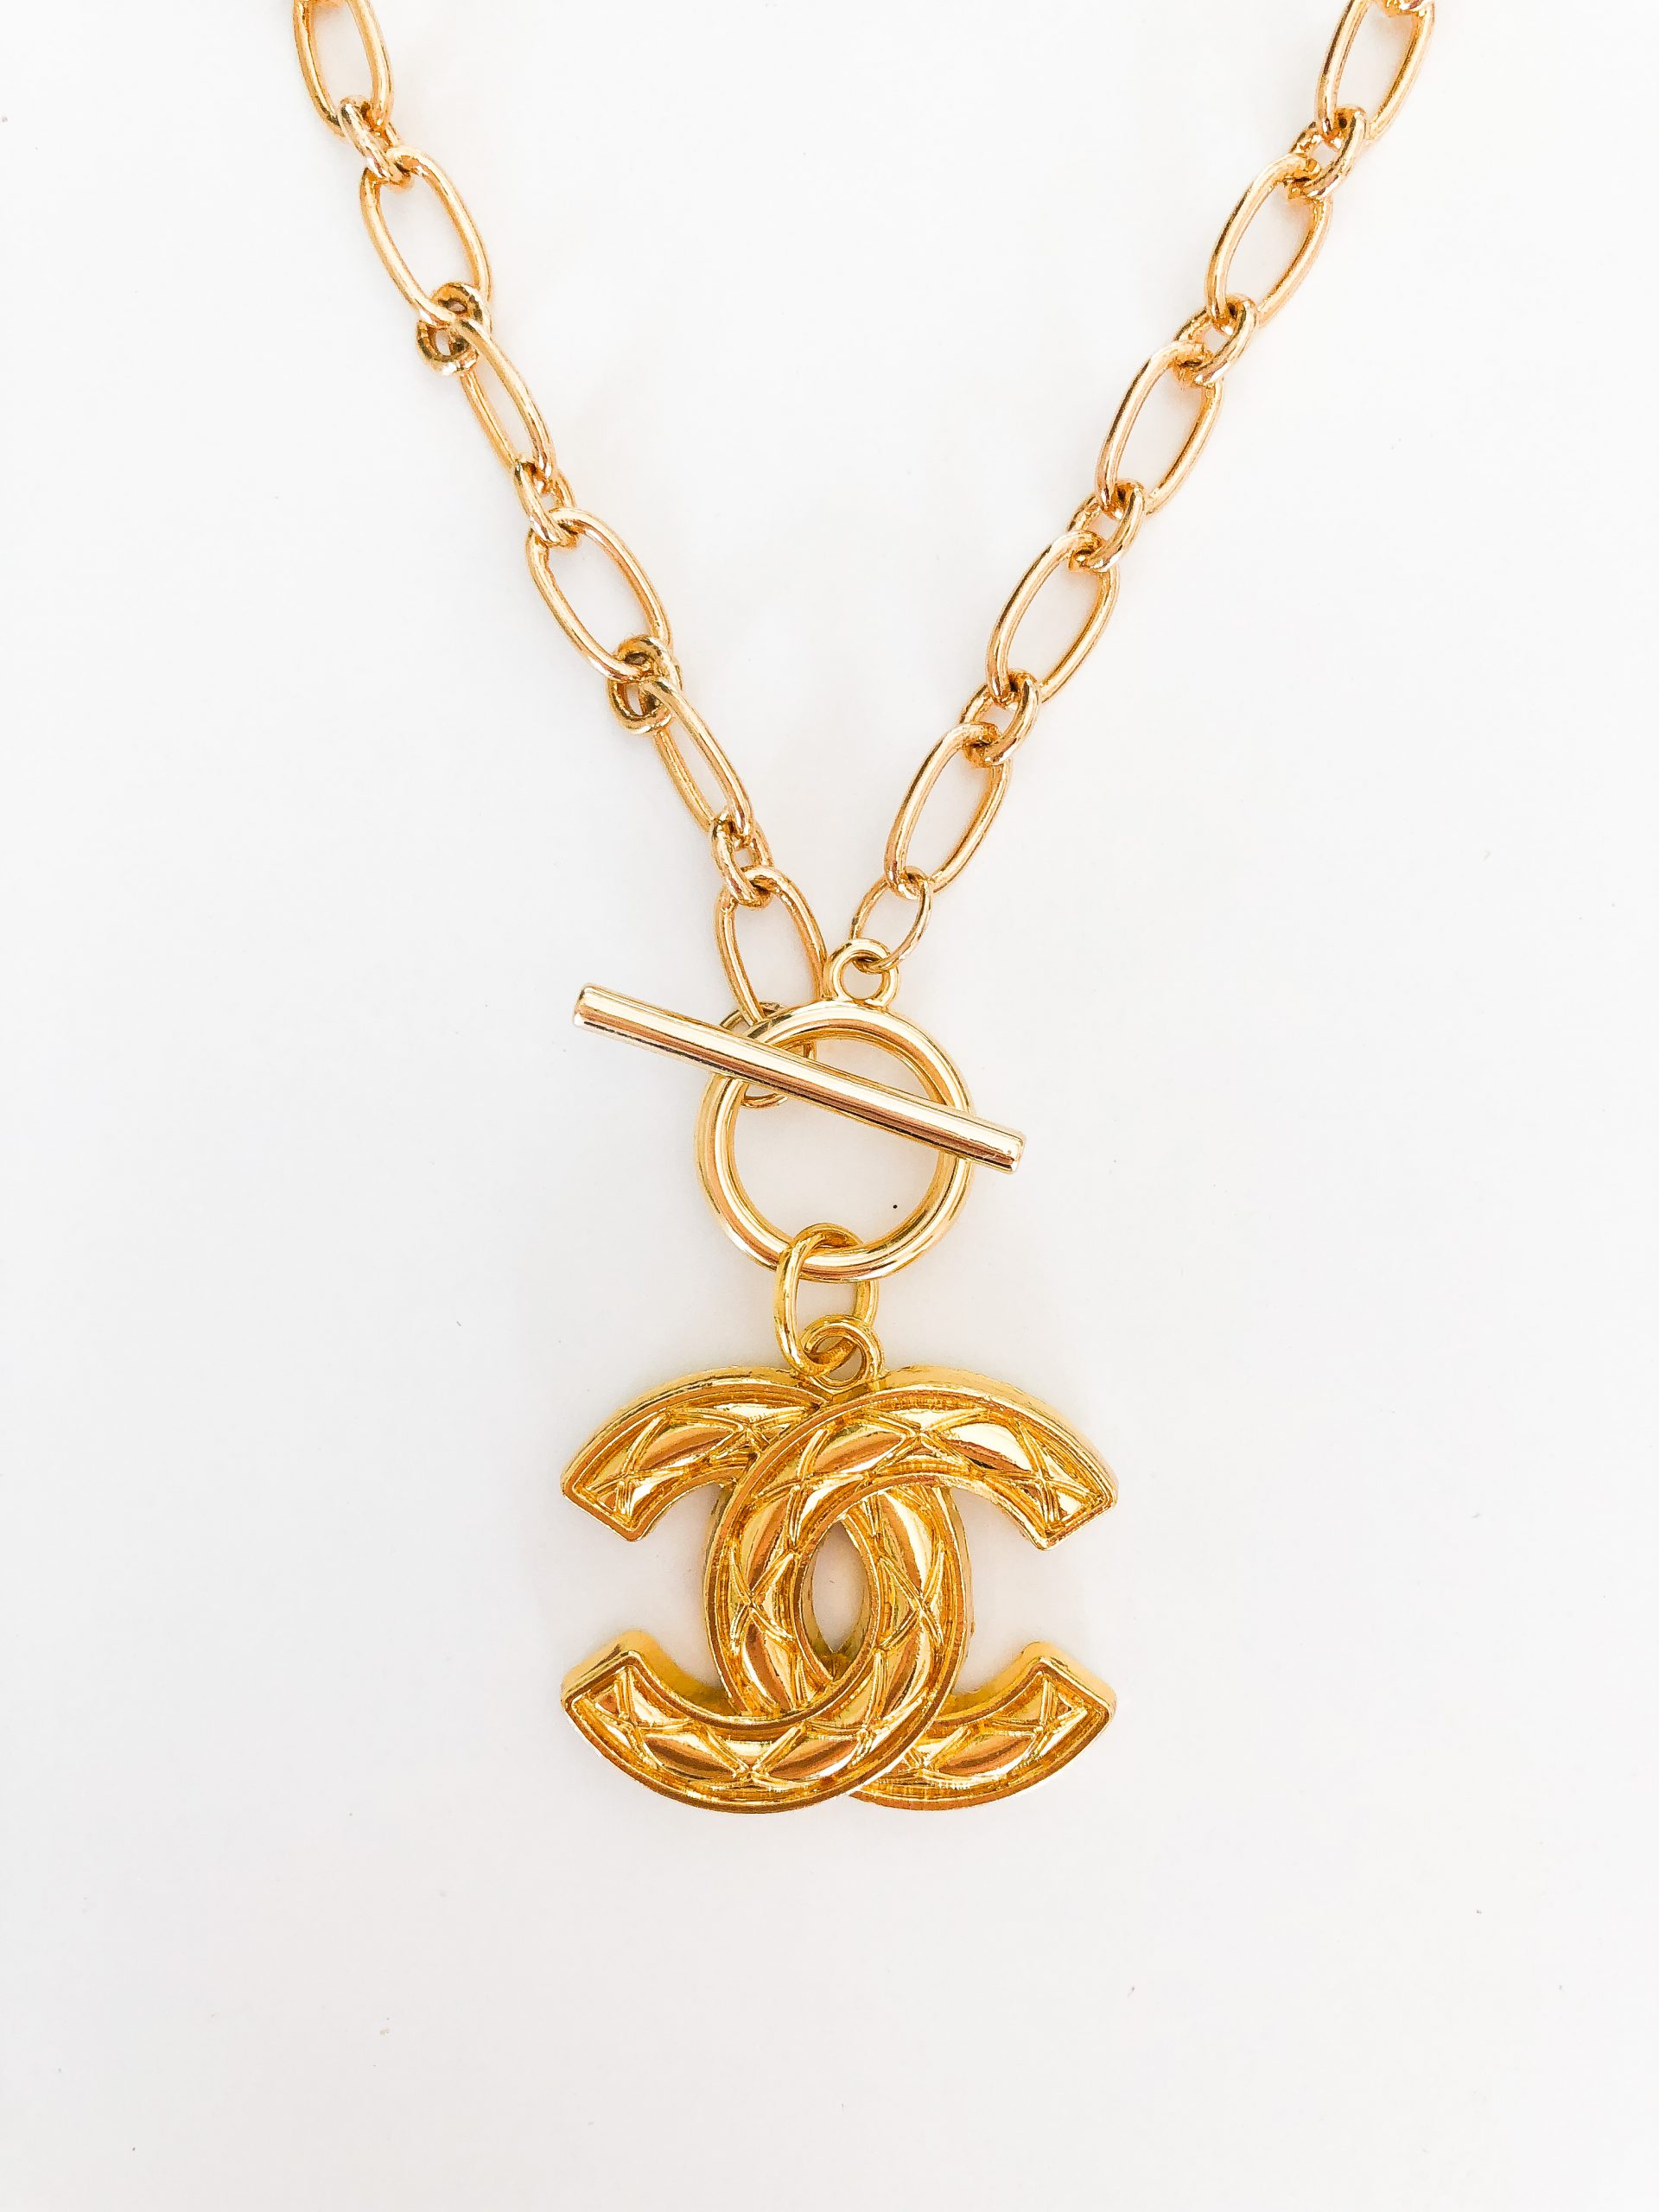 Chanel Baguette Crystal CC Pendant Necklace - Ruby Lane